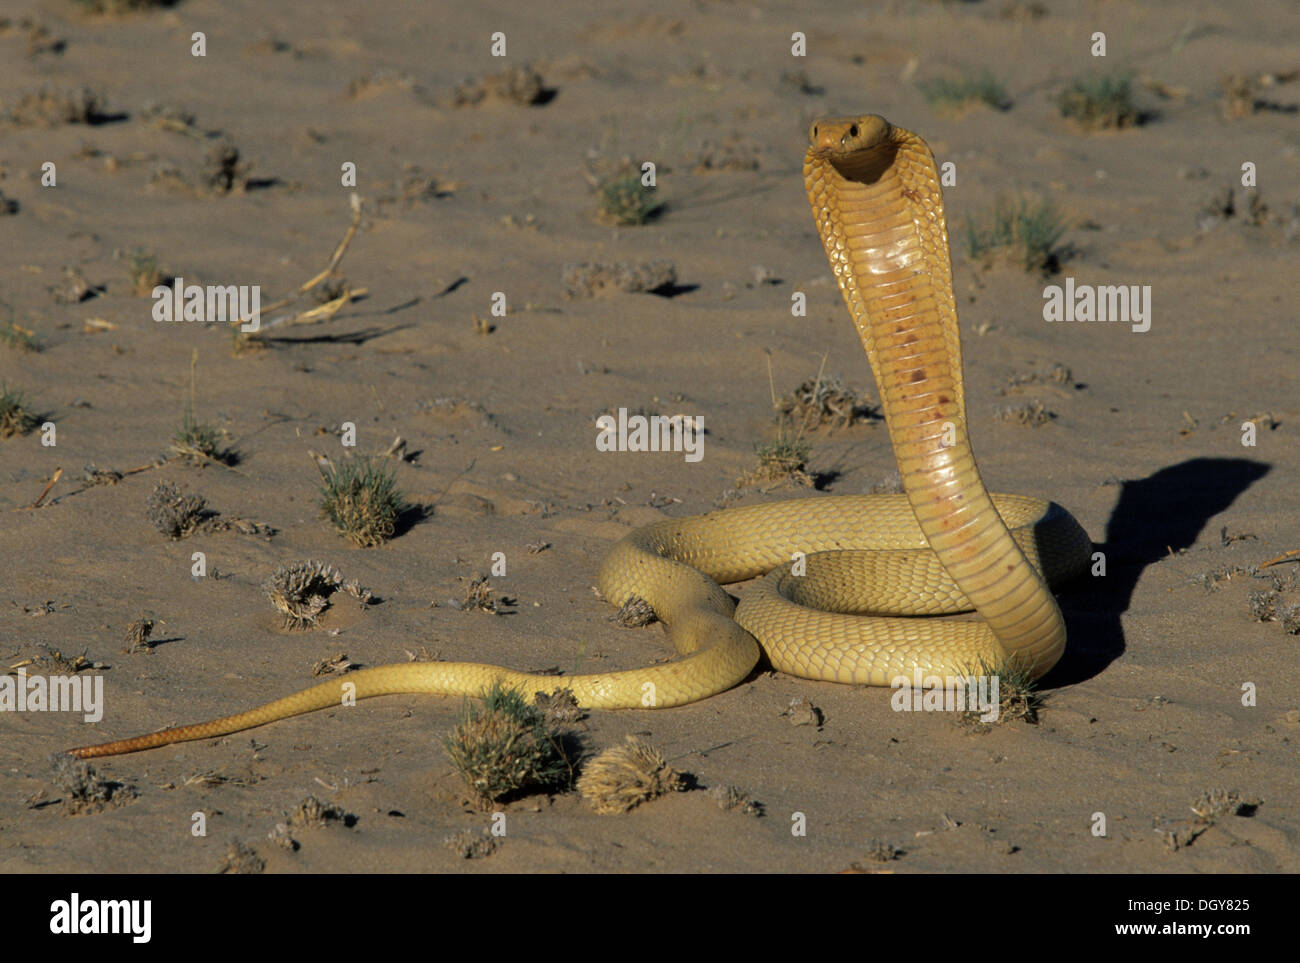 La cobra del cabo (naja nivea), amenaza display, el parque transfronterizo Kgalagadi, Sudáfrica, África Foto de stock